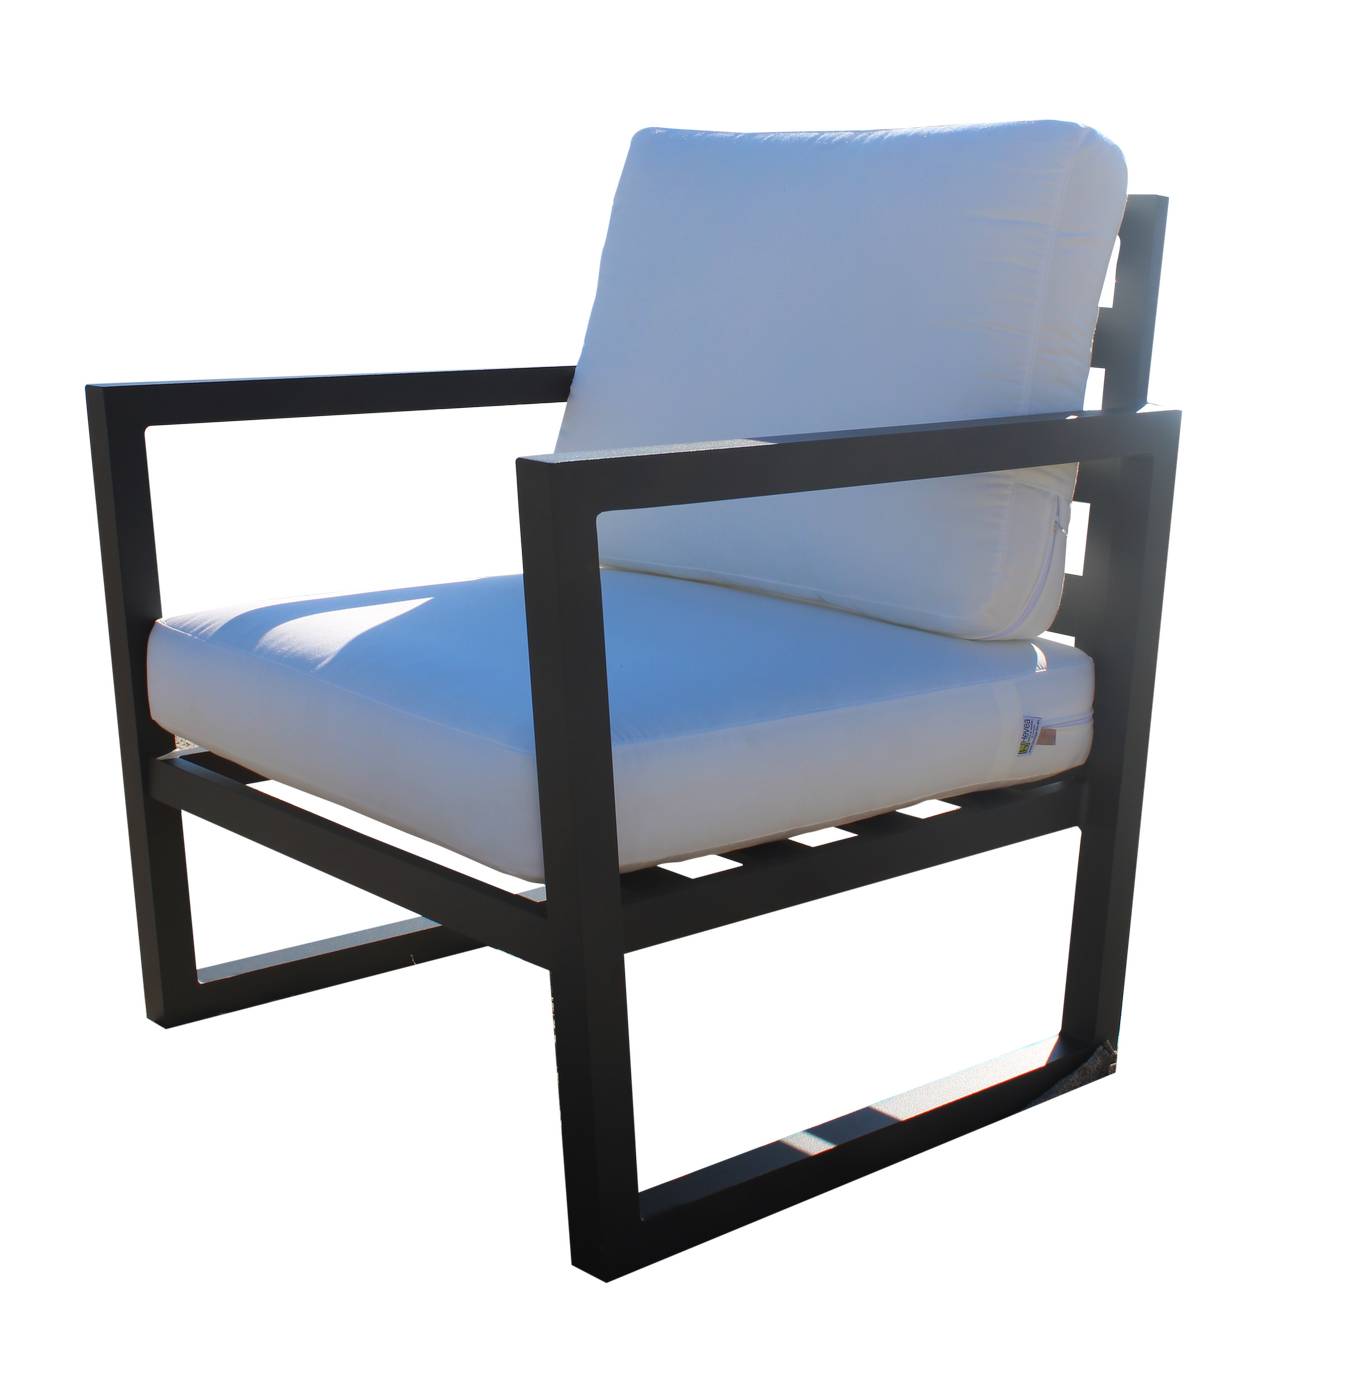 Set Aluminio Alpine-9 - Conjunto de aluminio para exterior: sofá 2 plazas + 2 sillones + mesa de centro + 2 taburetes. Disponible en color blanco o antracita.